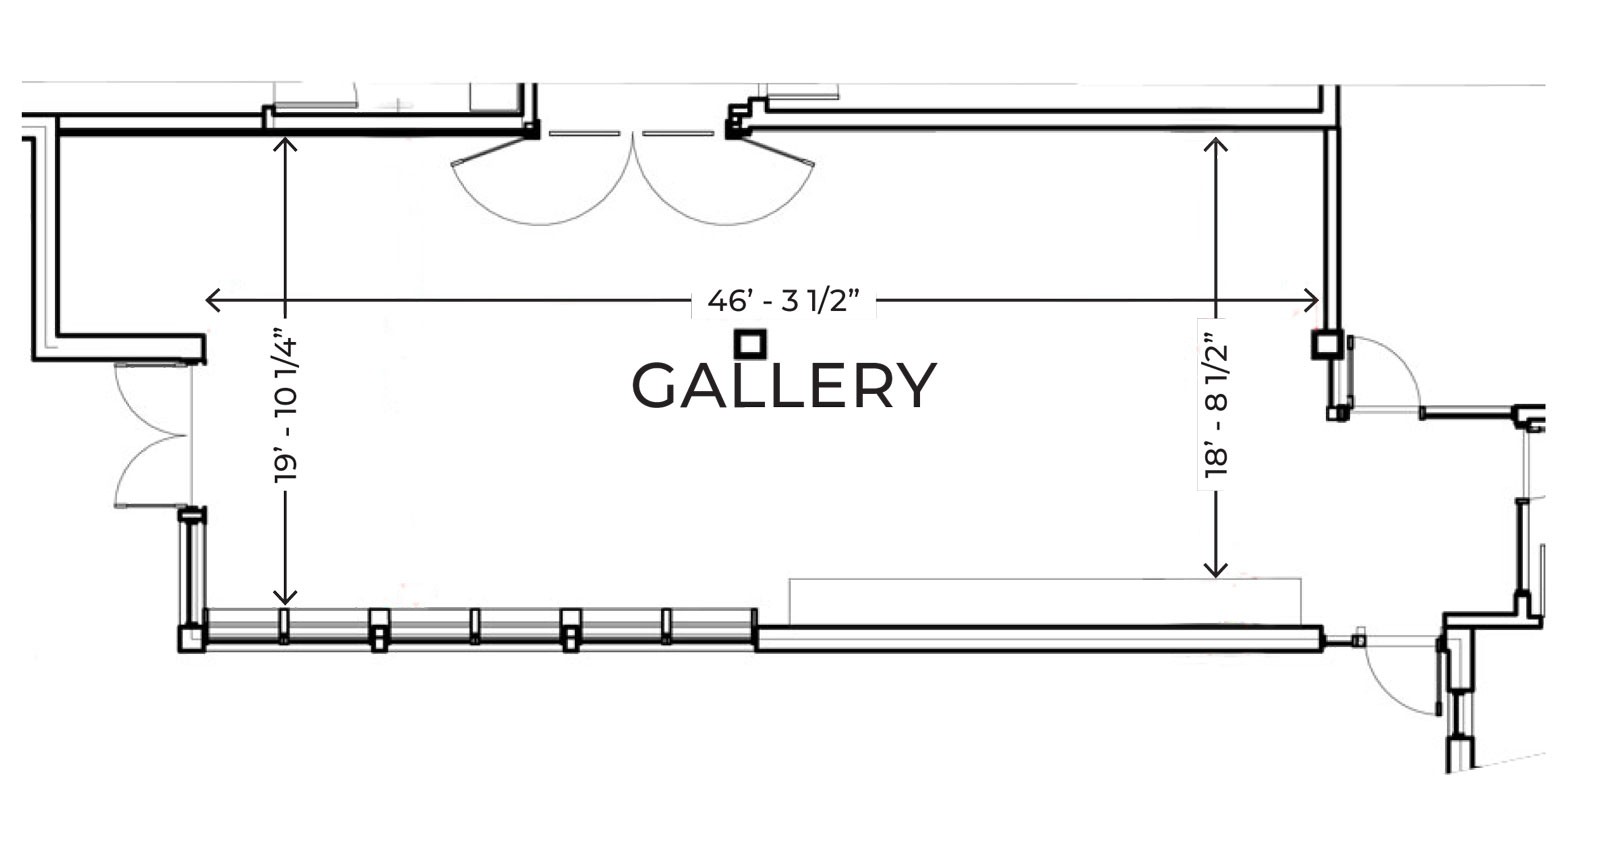 Gallery floor plans